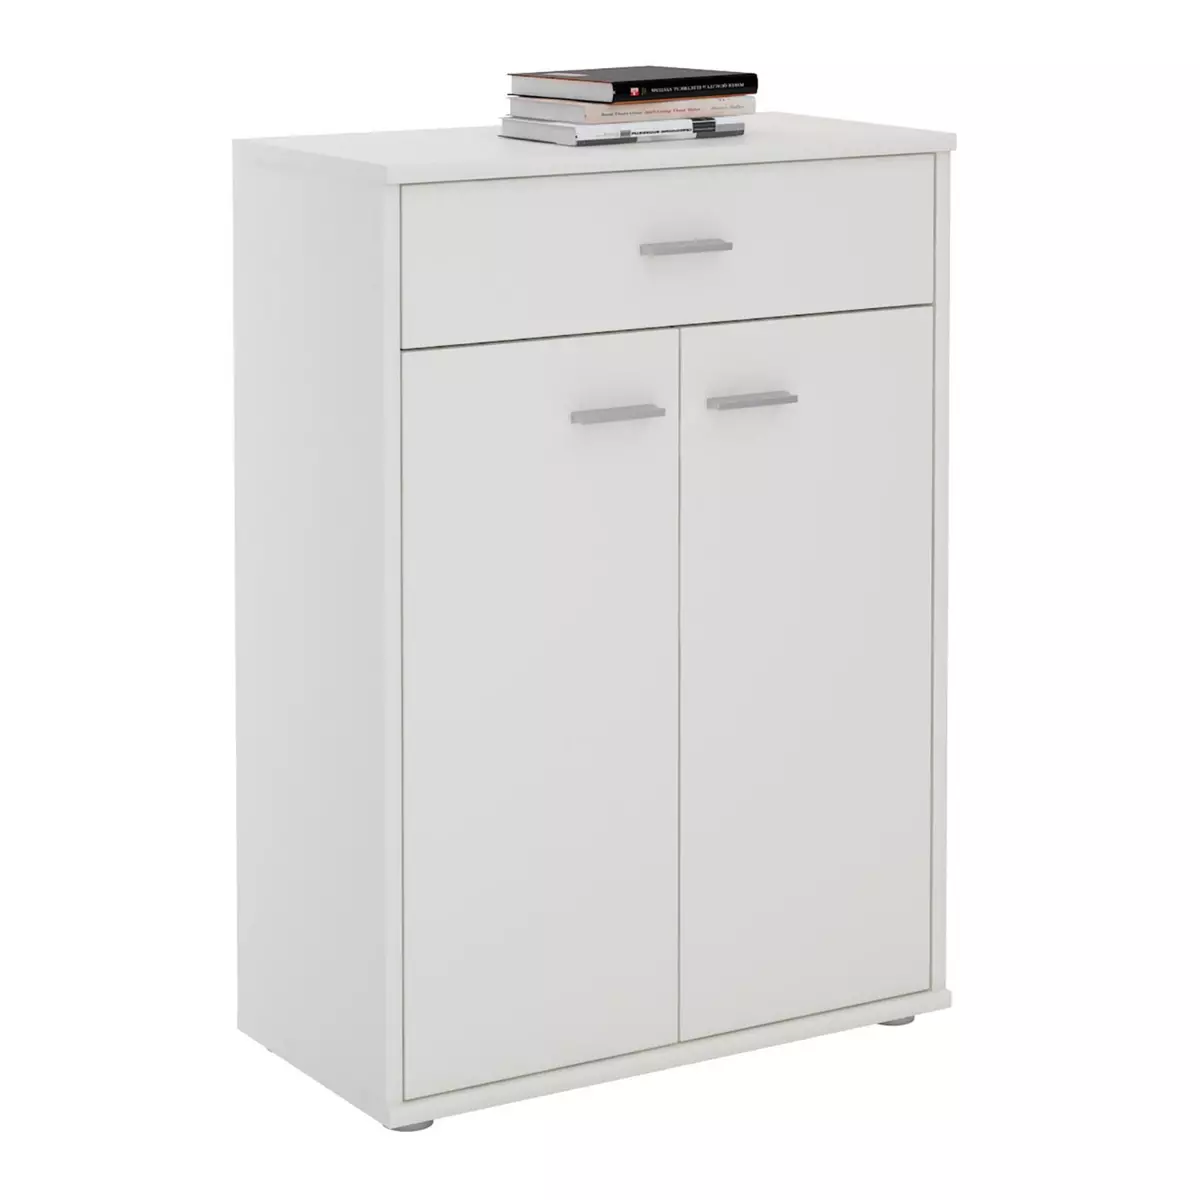 IDIMEX Buffet CALAIS, commode meuble de rangement avec 1 tiroir et 2 portes, en mélaminé blanc mat